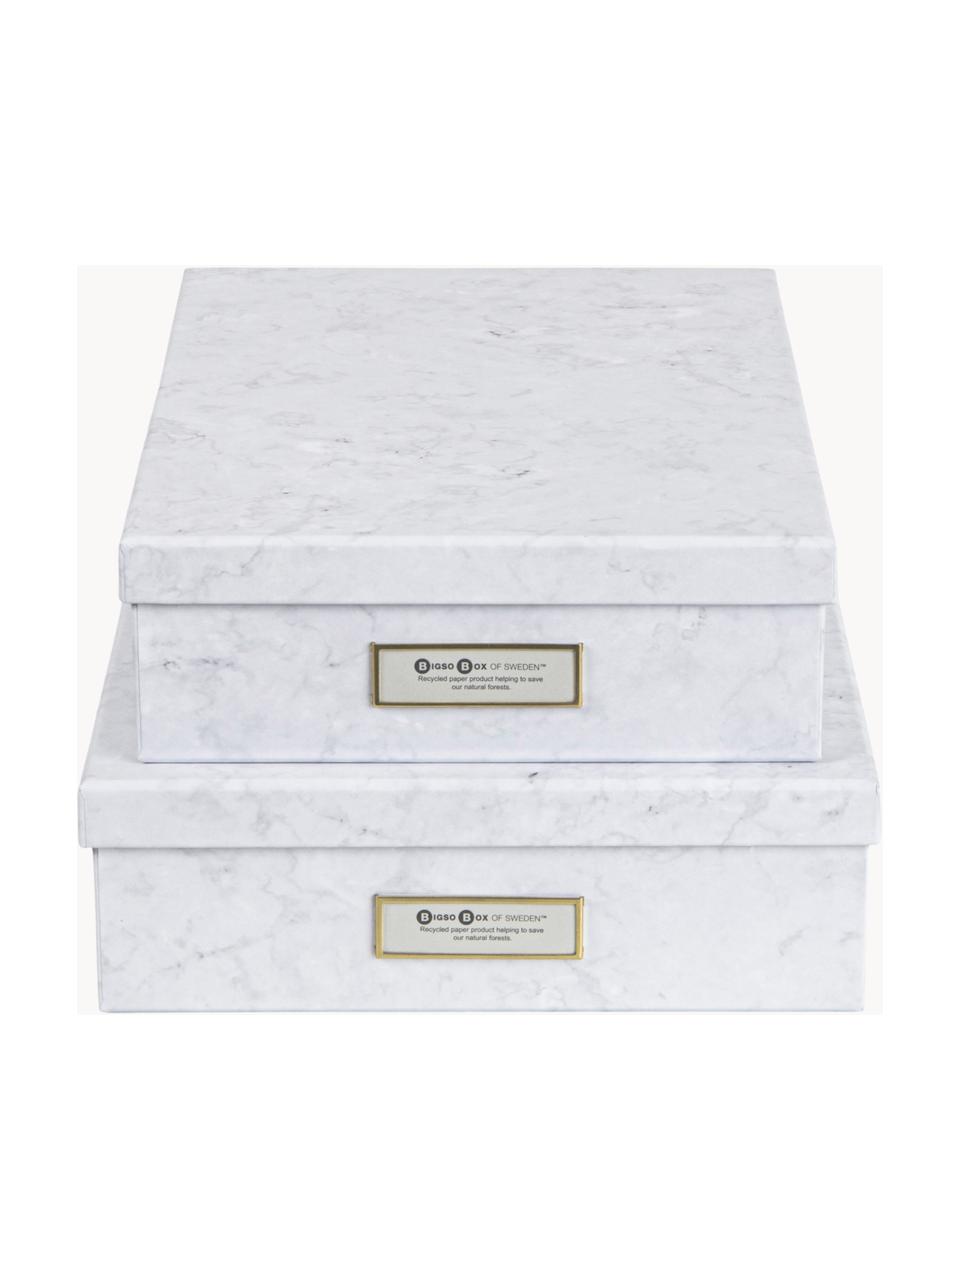 Aufbewahrungsboxen Rasmus II, 2er-Set, Dekor: Metall, Weiß, marmoriert, Set mit verschiedenen Größen